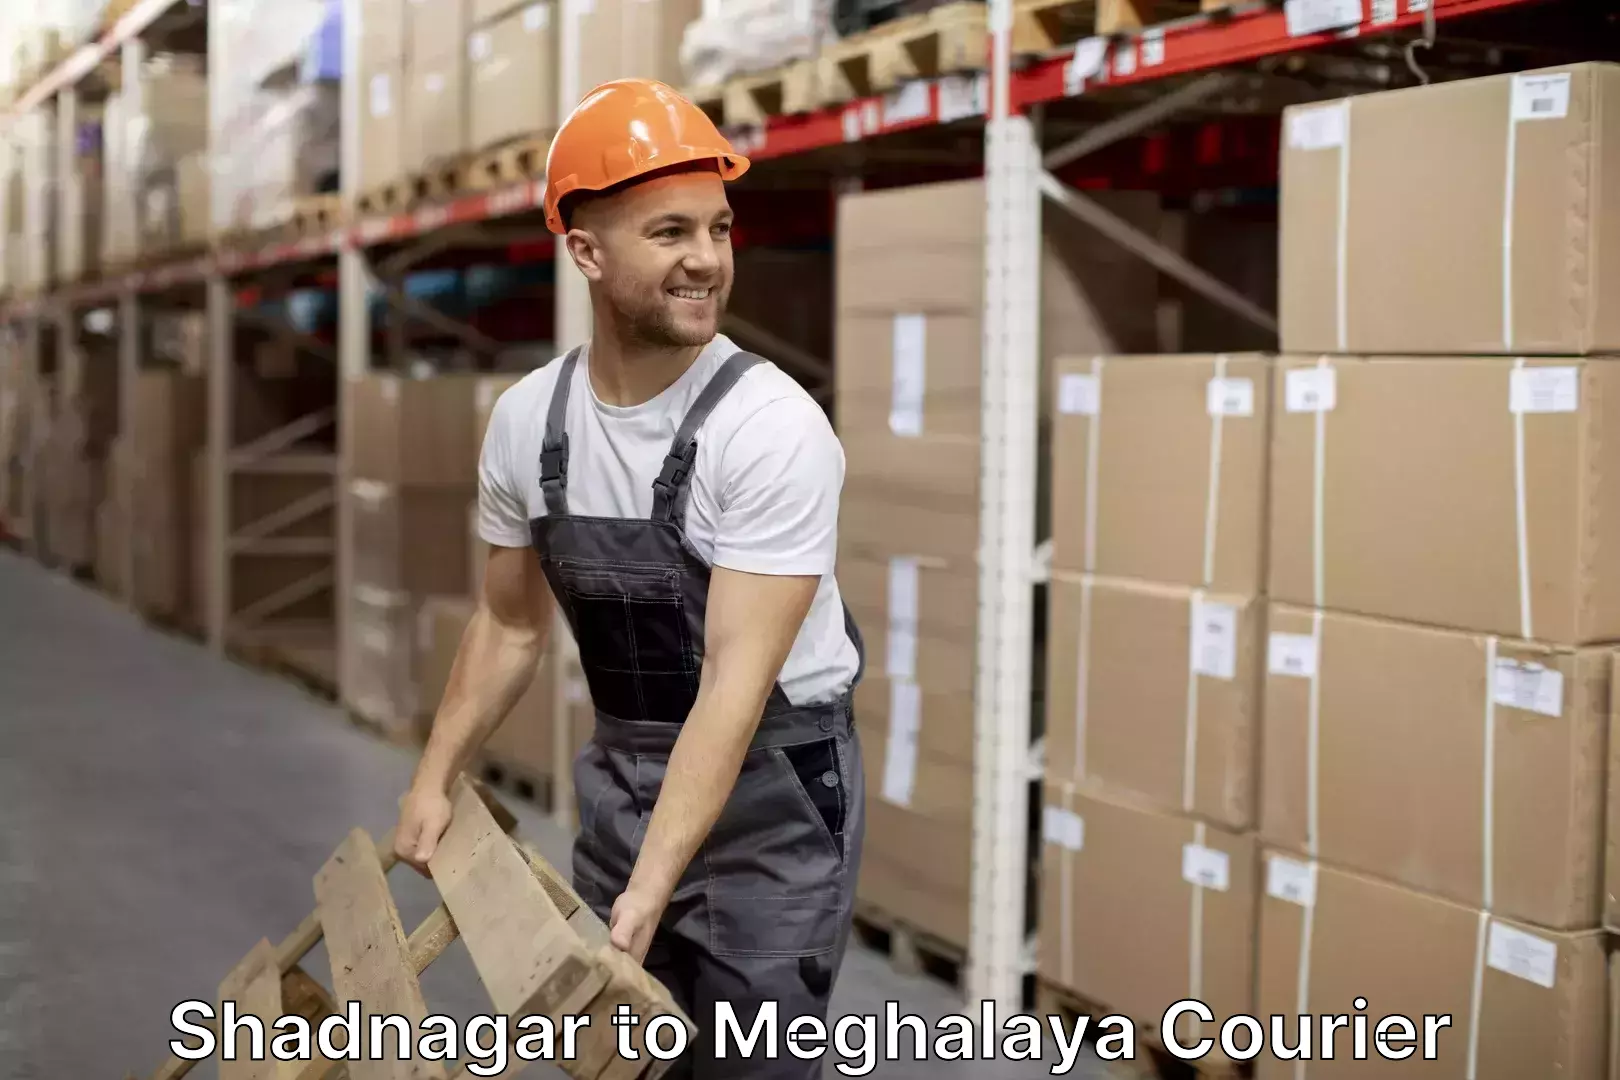 Moving and handling services Shadnagar to Meghalaya